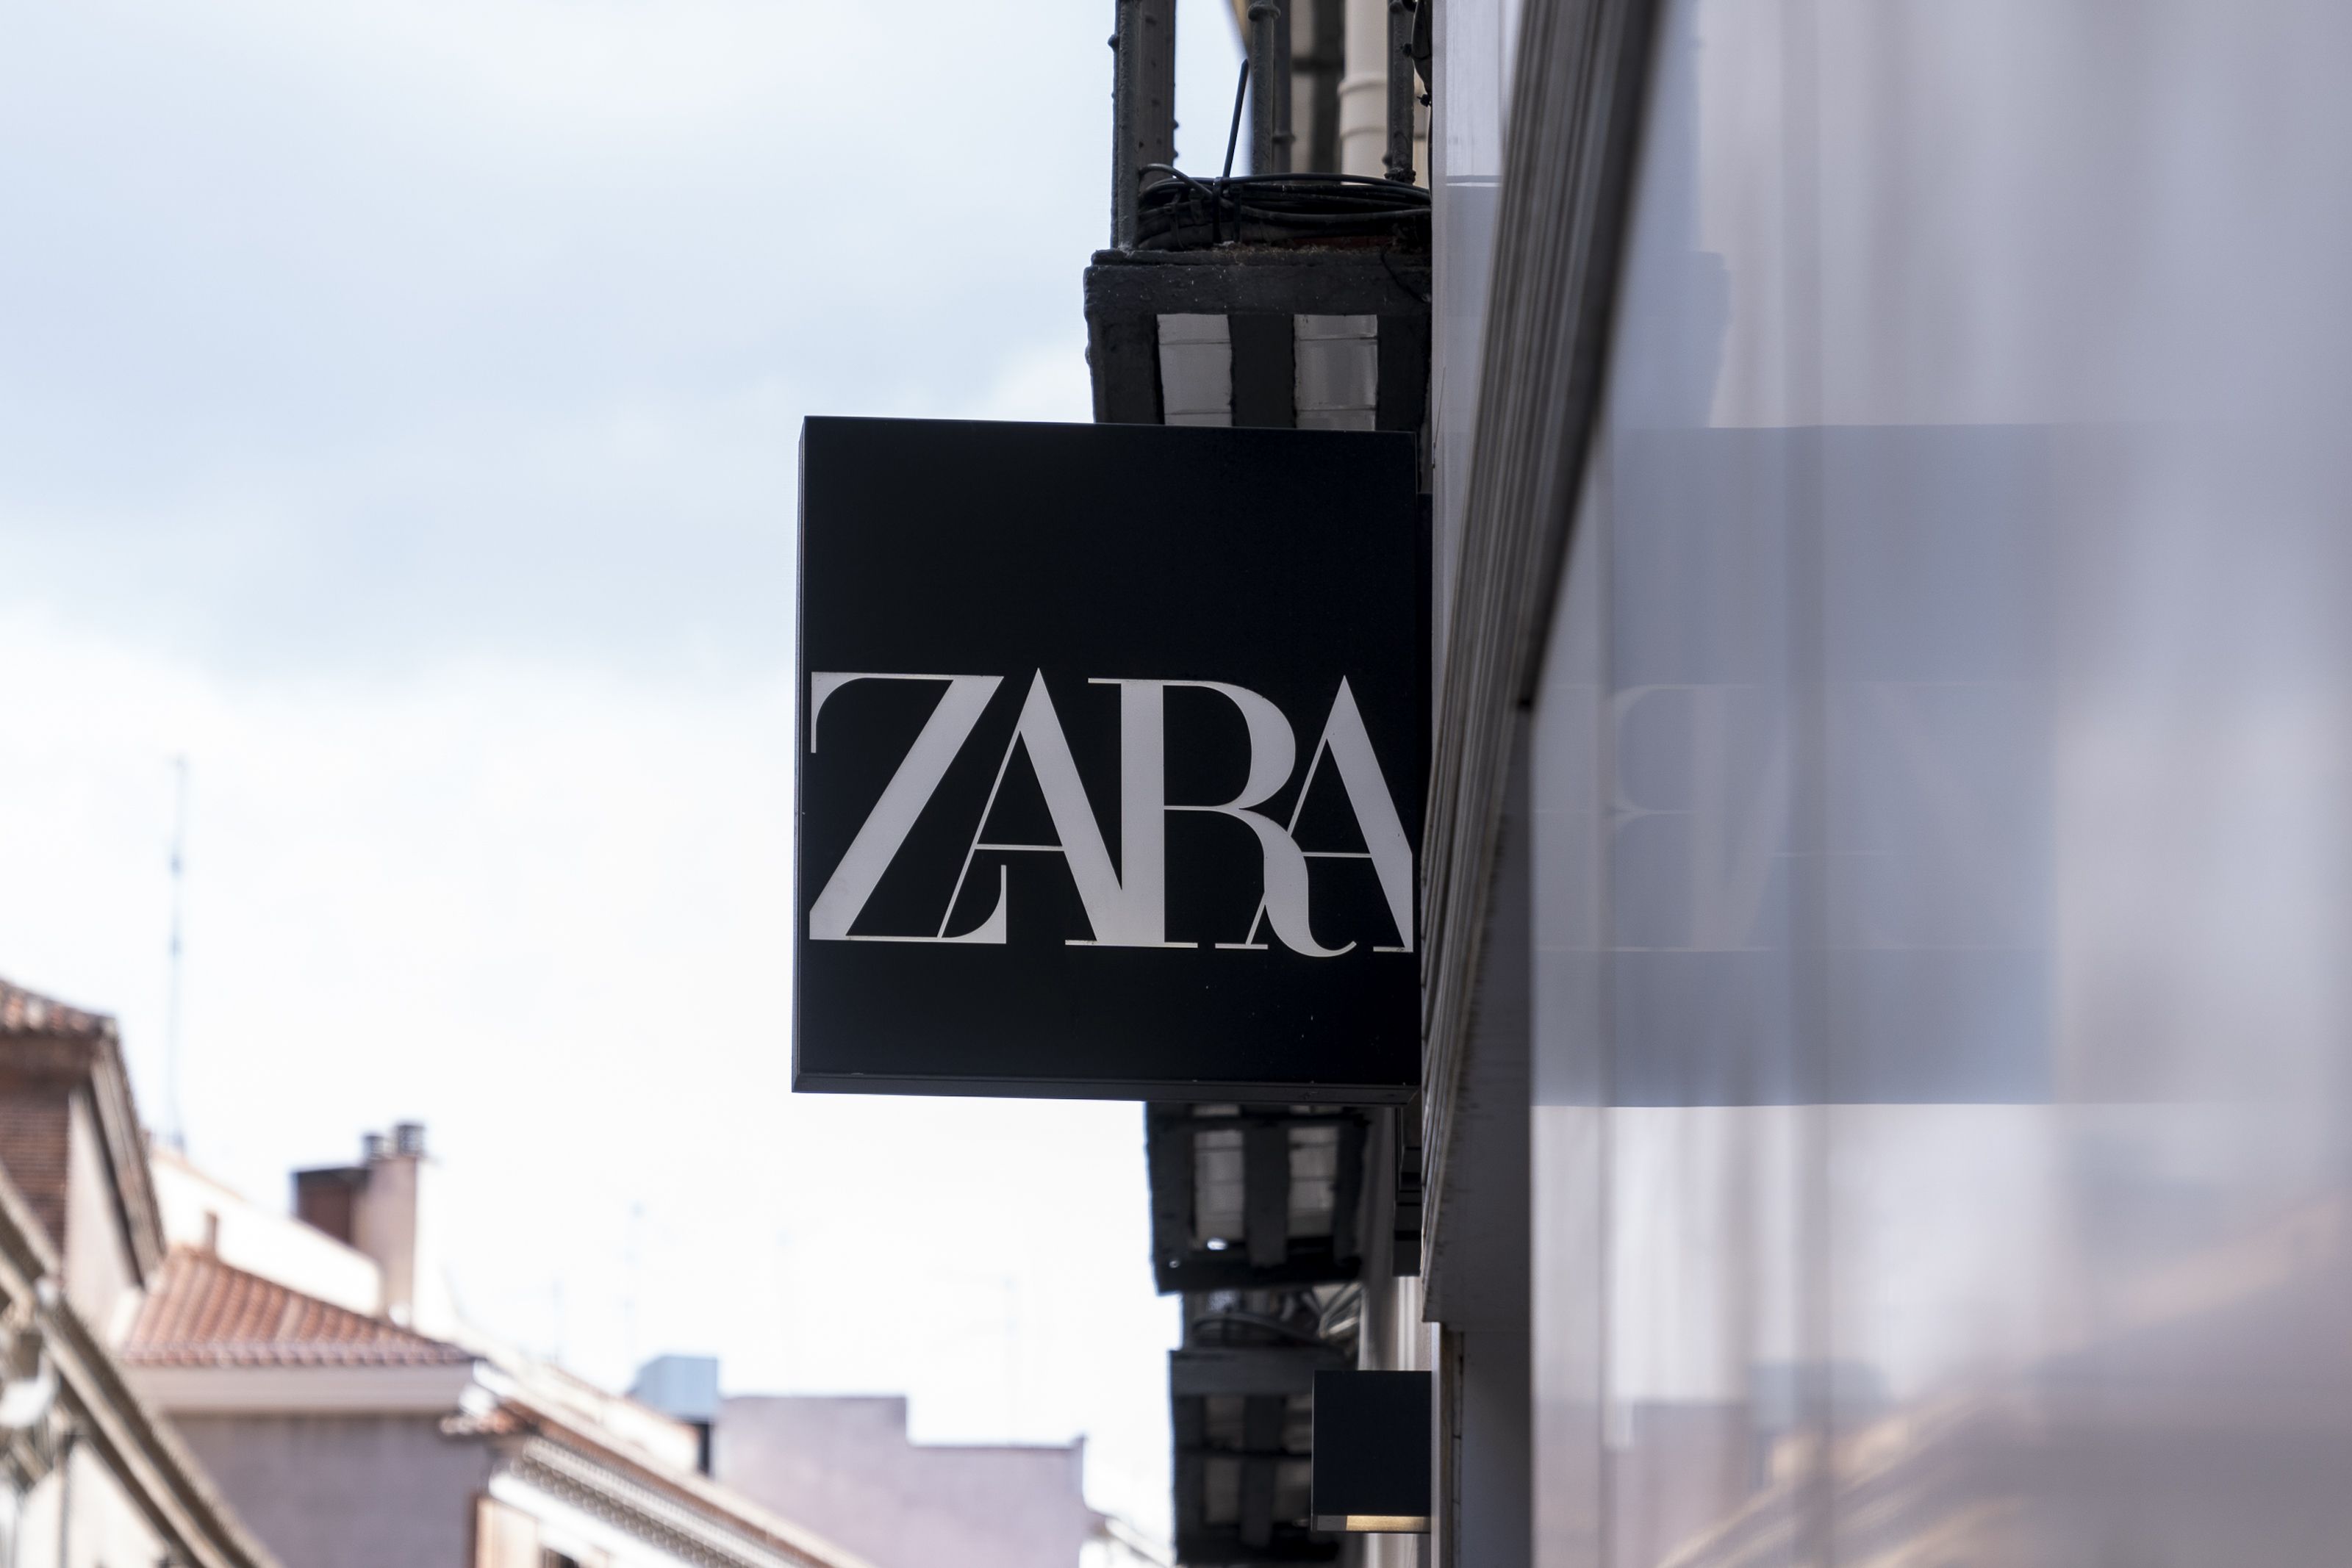 El truco para saber qué prendas estarán rebajadas este verano en Zara